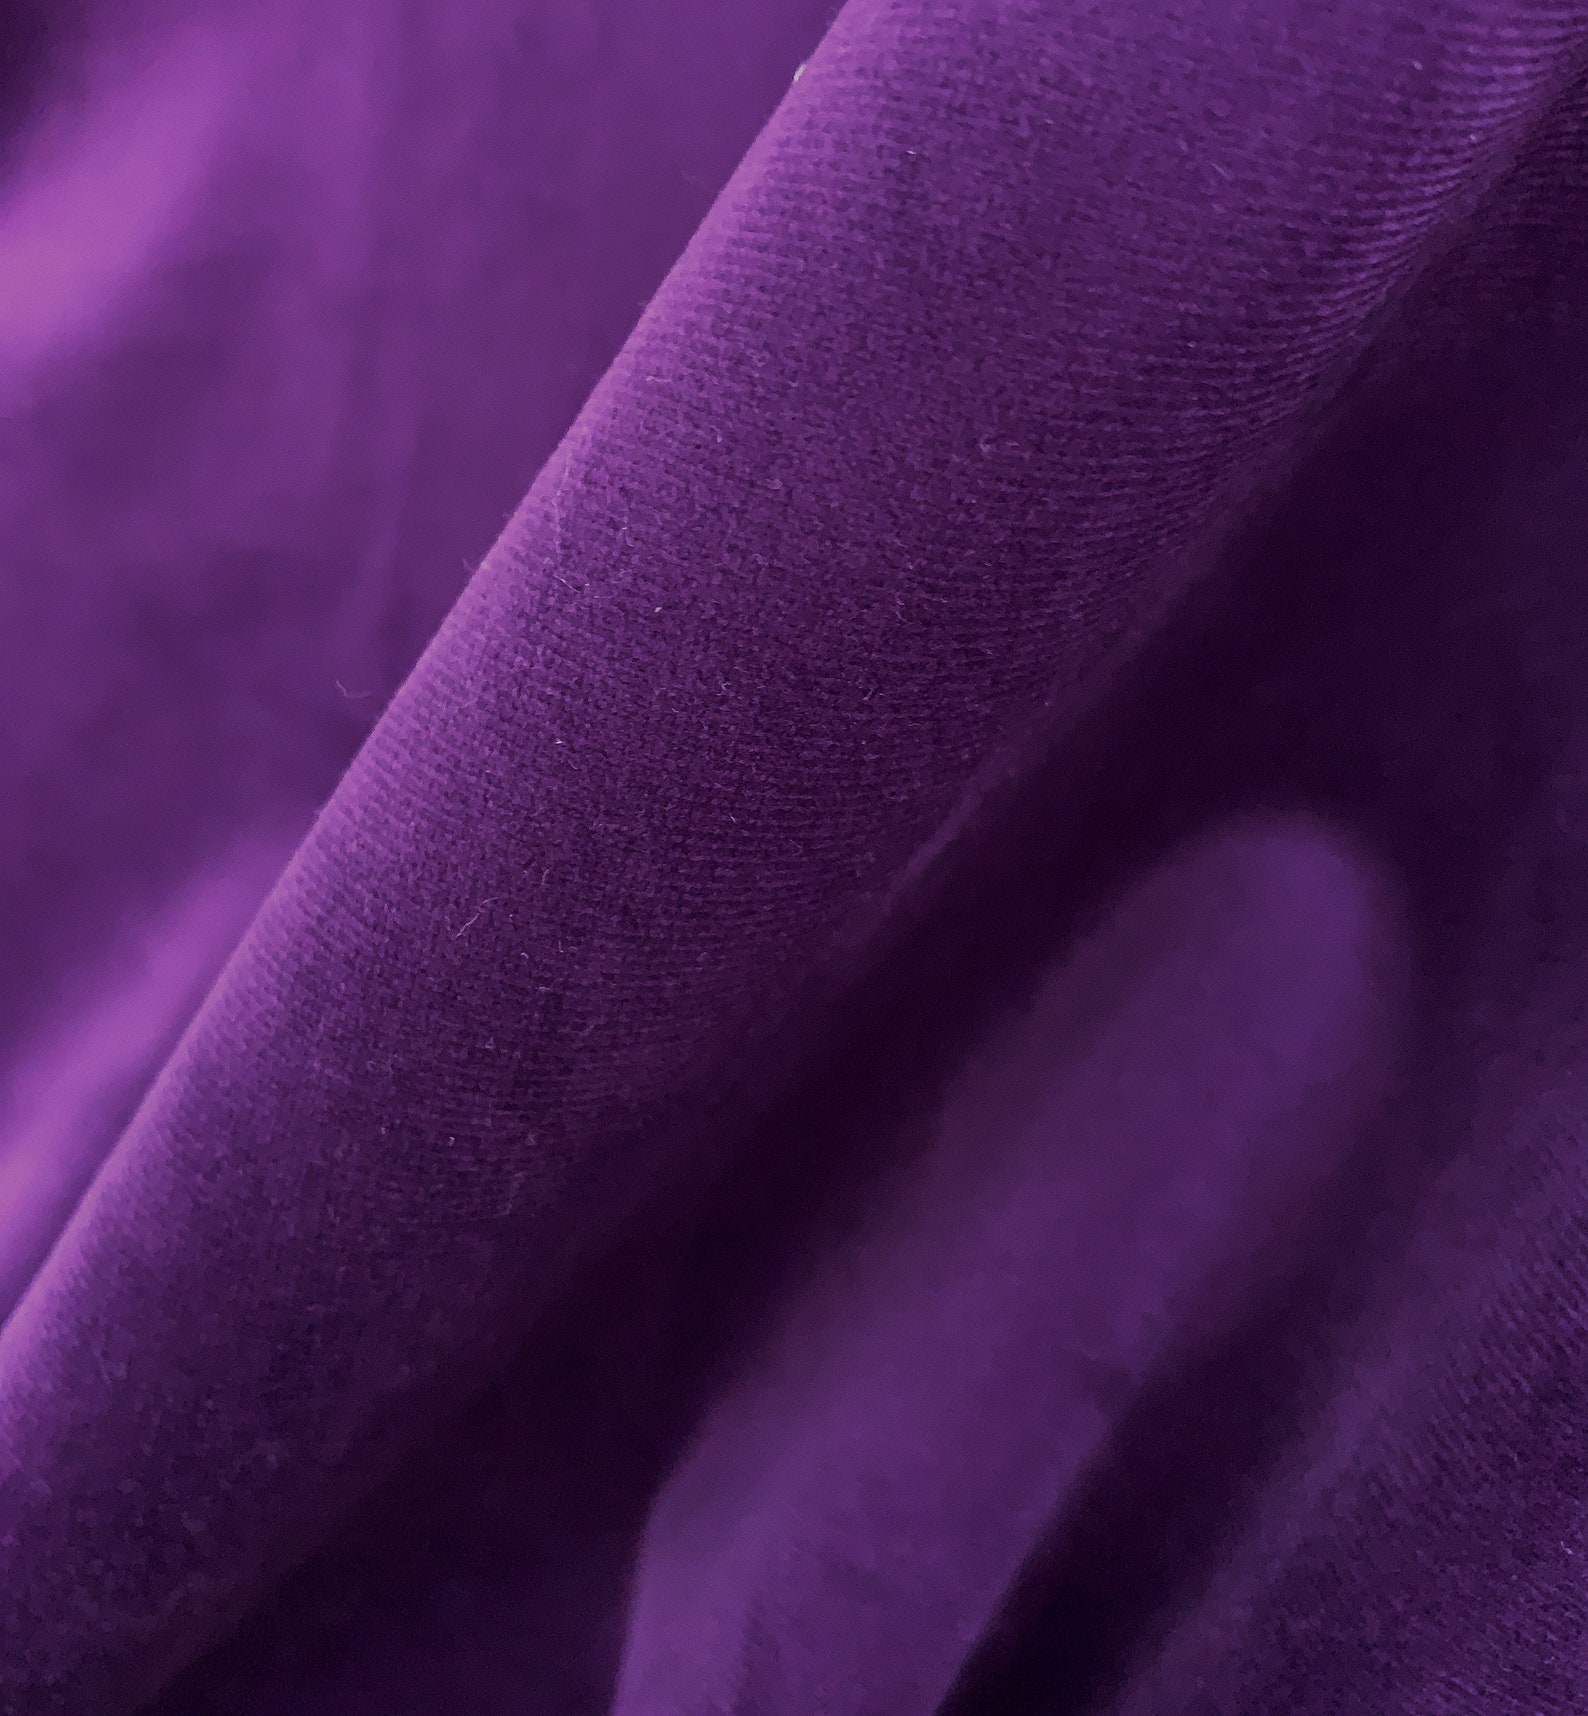 Luxury Purple Eggplant Curtains Custom Velvet Bedroom | Etsy